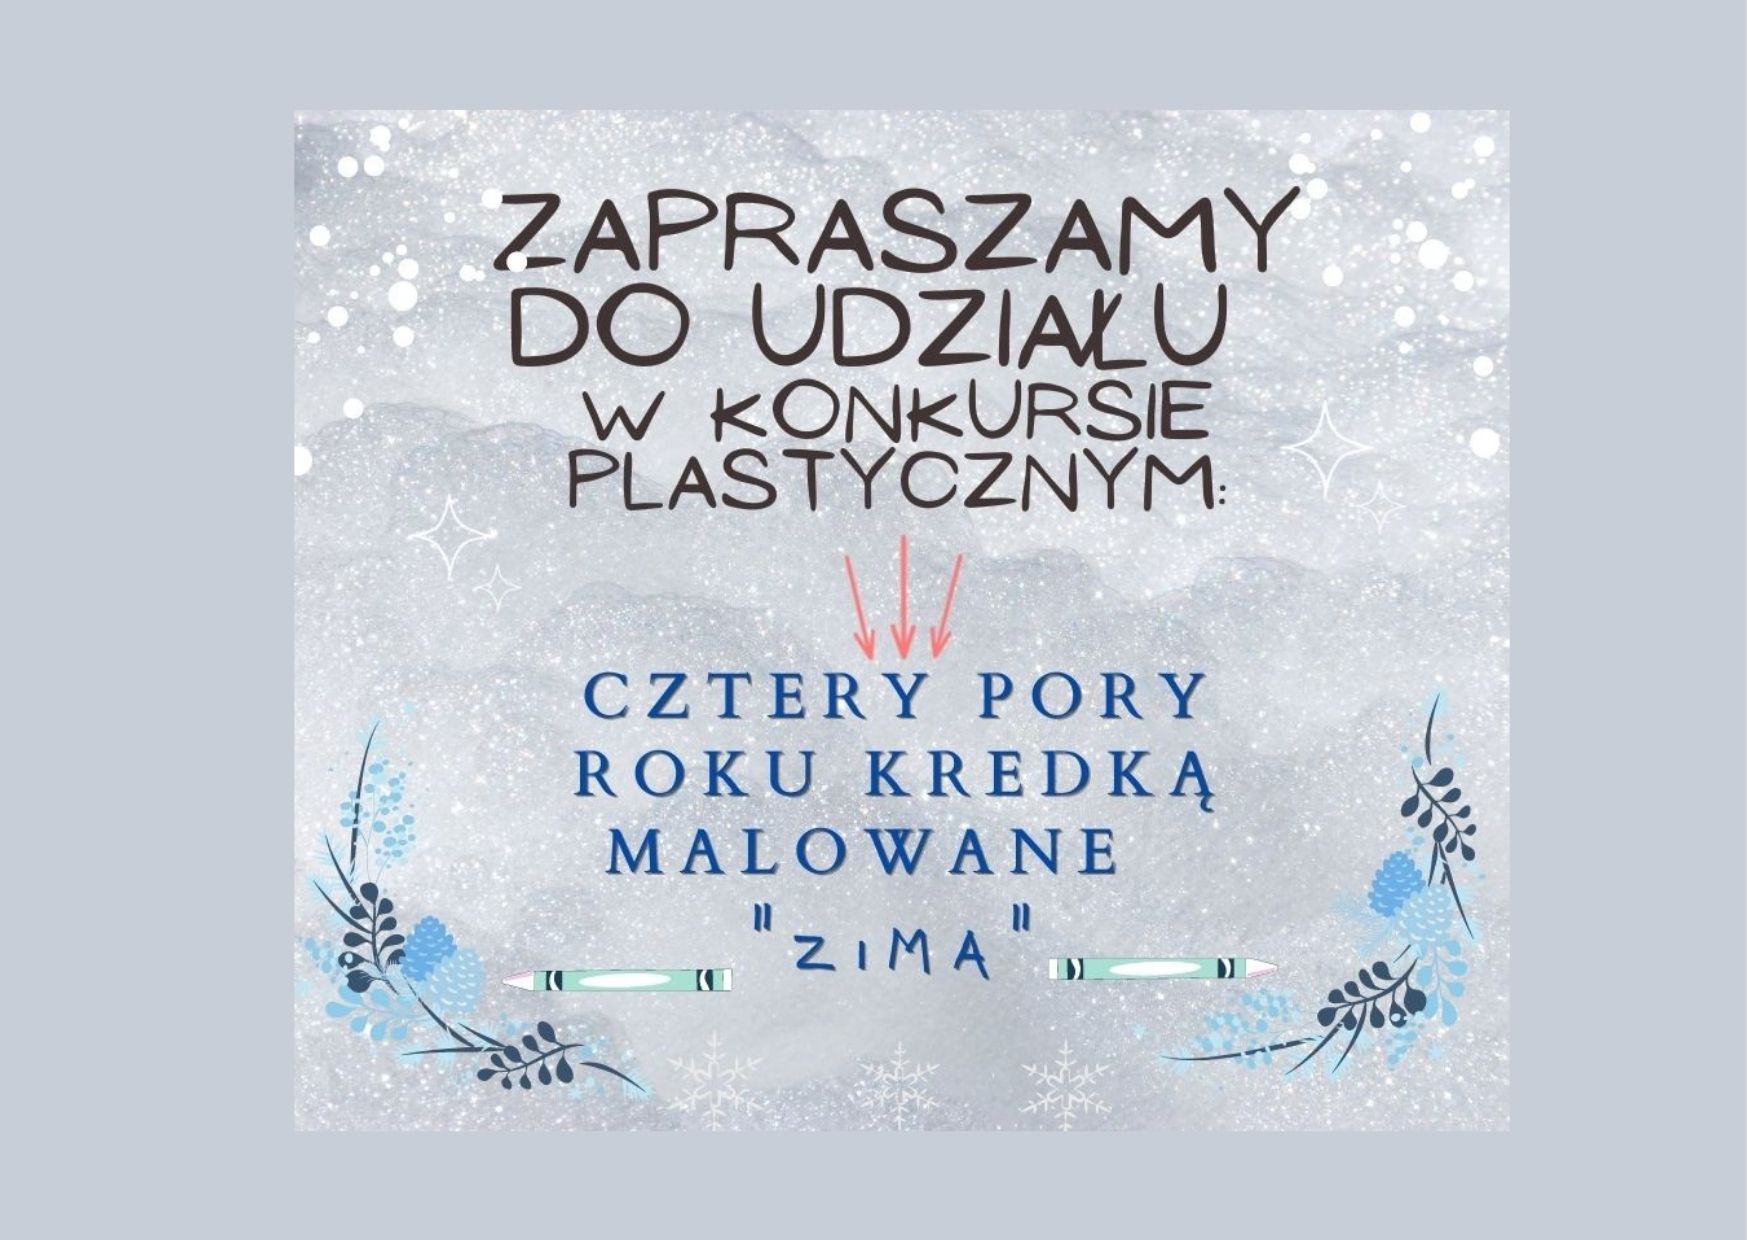 Grafika przedstawia zimowe tło oraz napis: Zapraszamy do udziału w konkursie plastycznym Cztery pory roku kredką malowane ZIMA